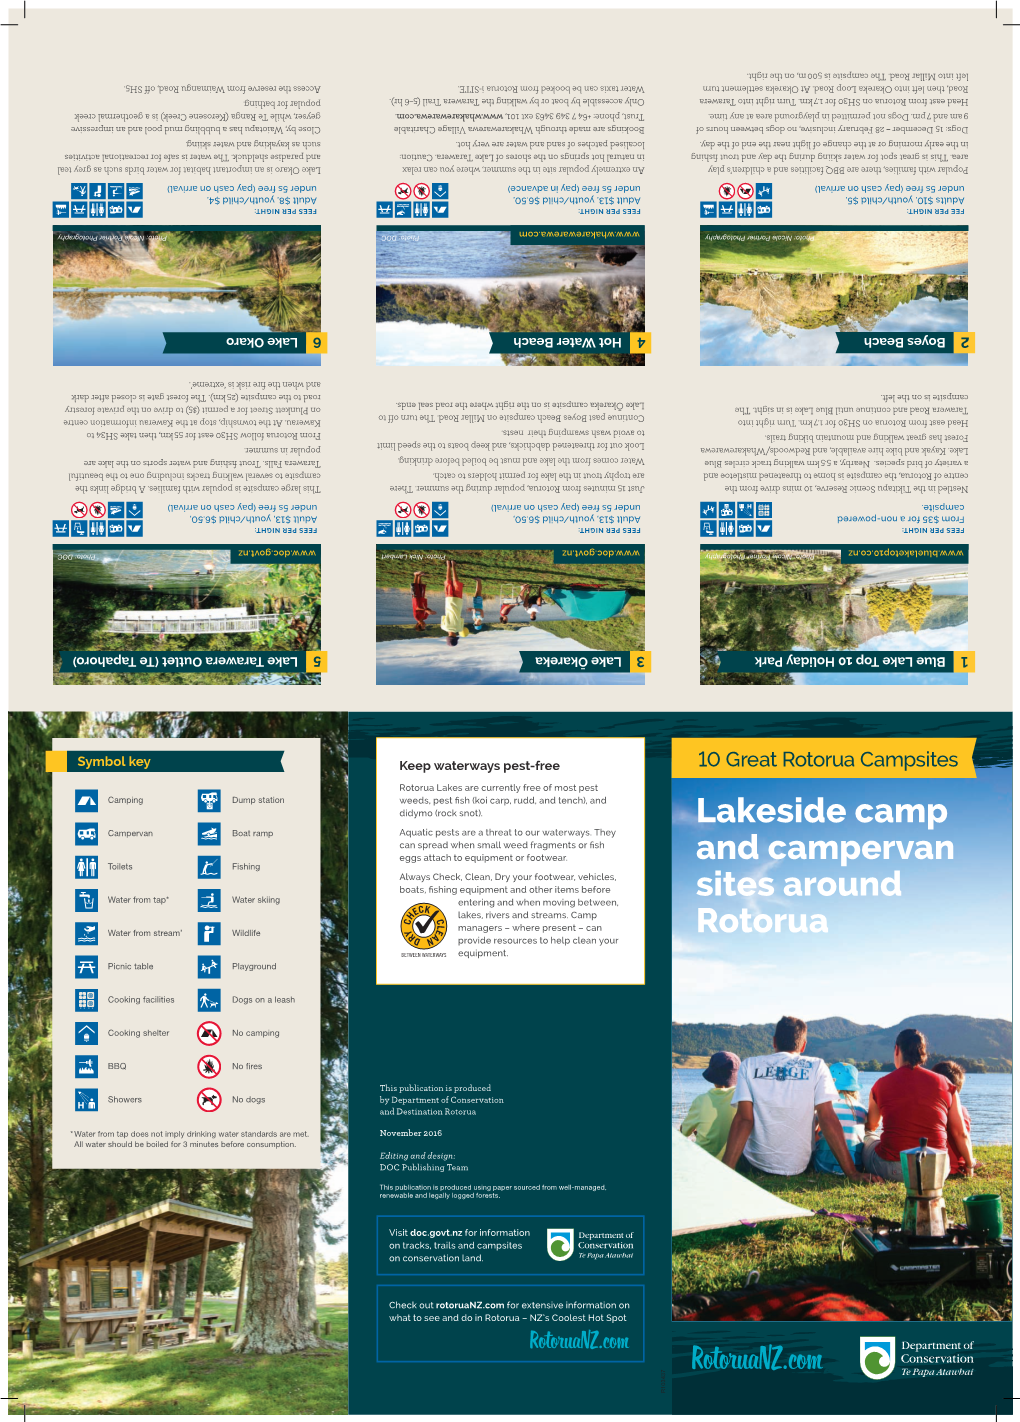 10 Great Rotorua Campsites Brochure